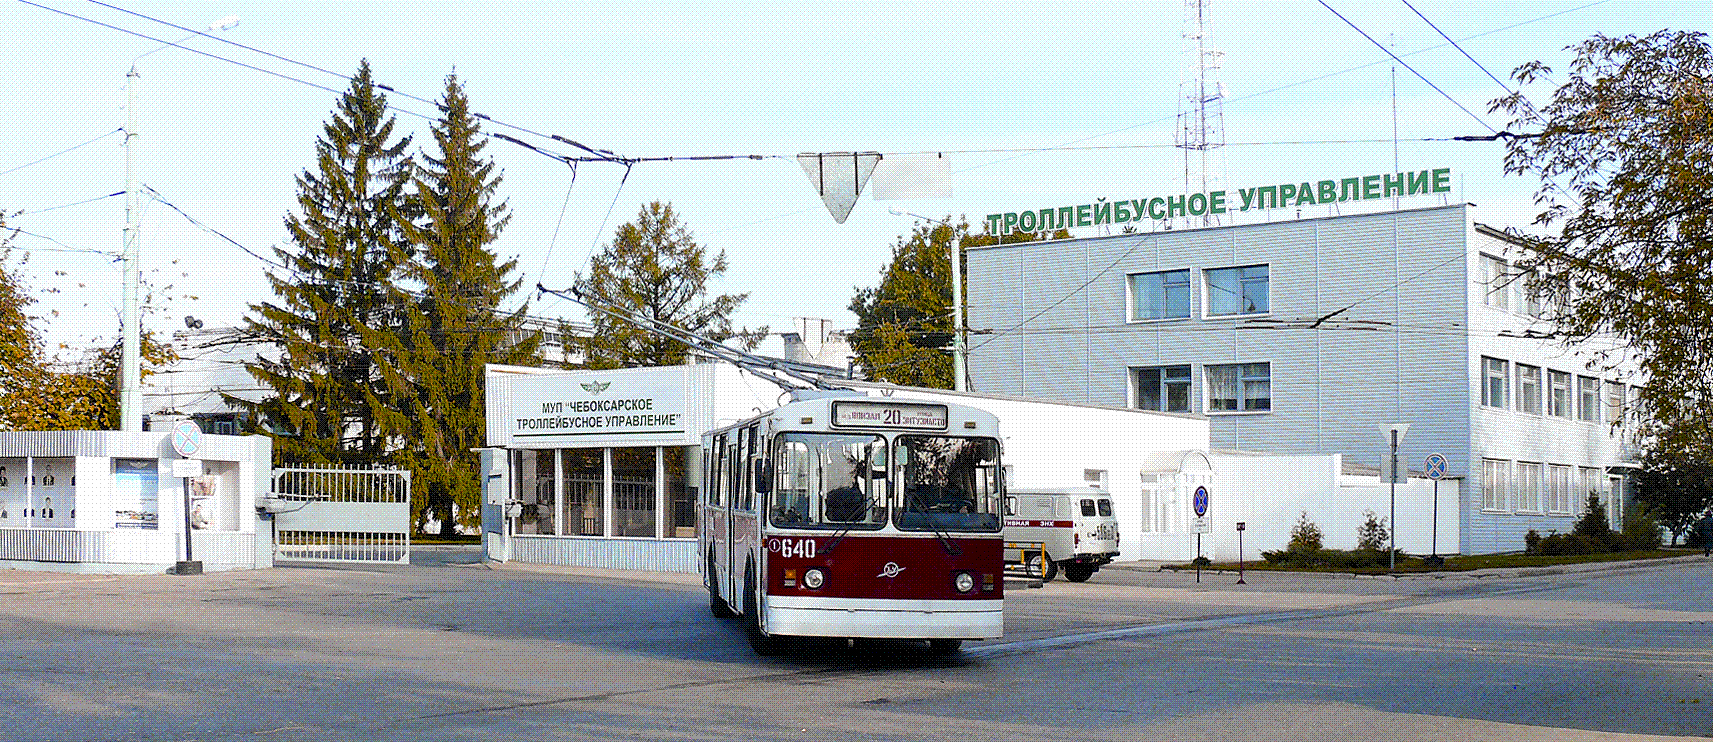 "Чебоксарское троллейбусное управление. Фото 2011."